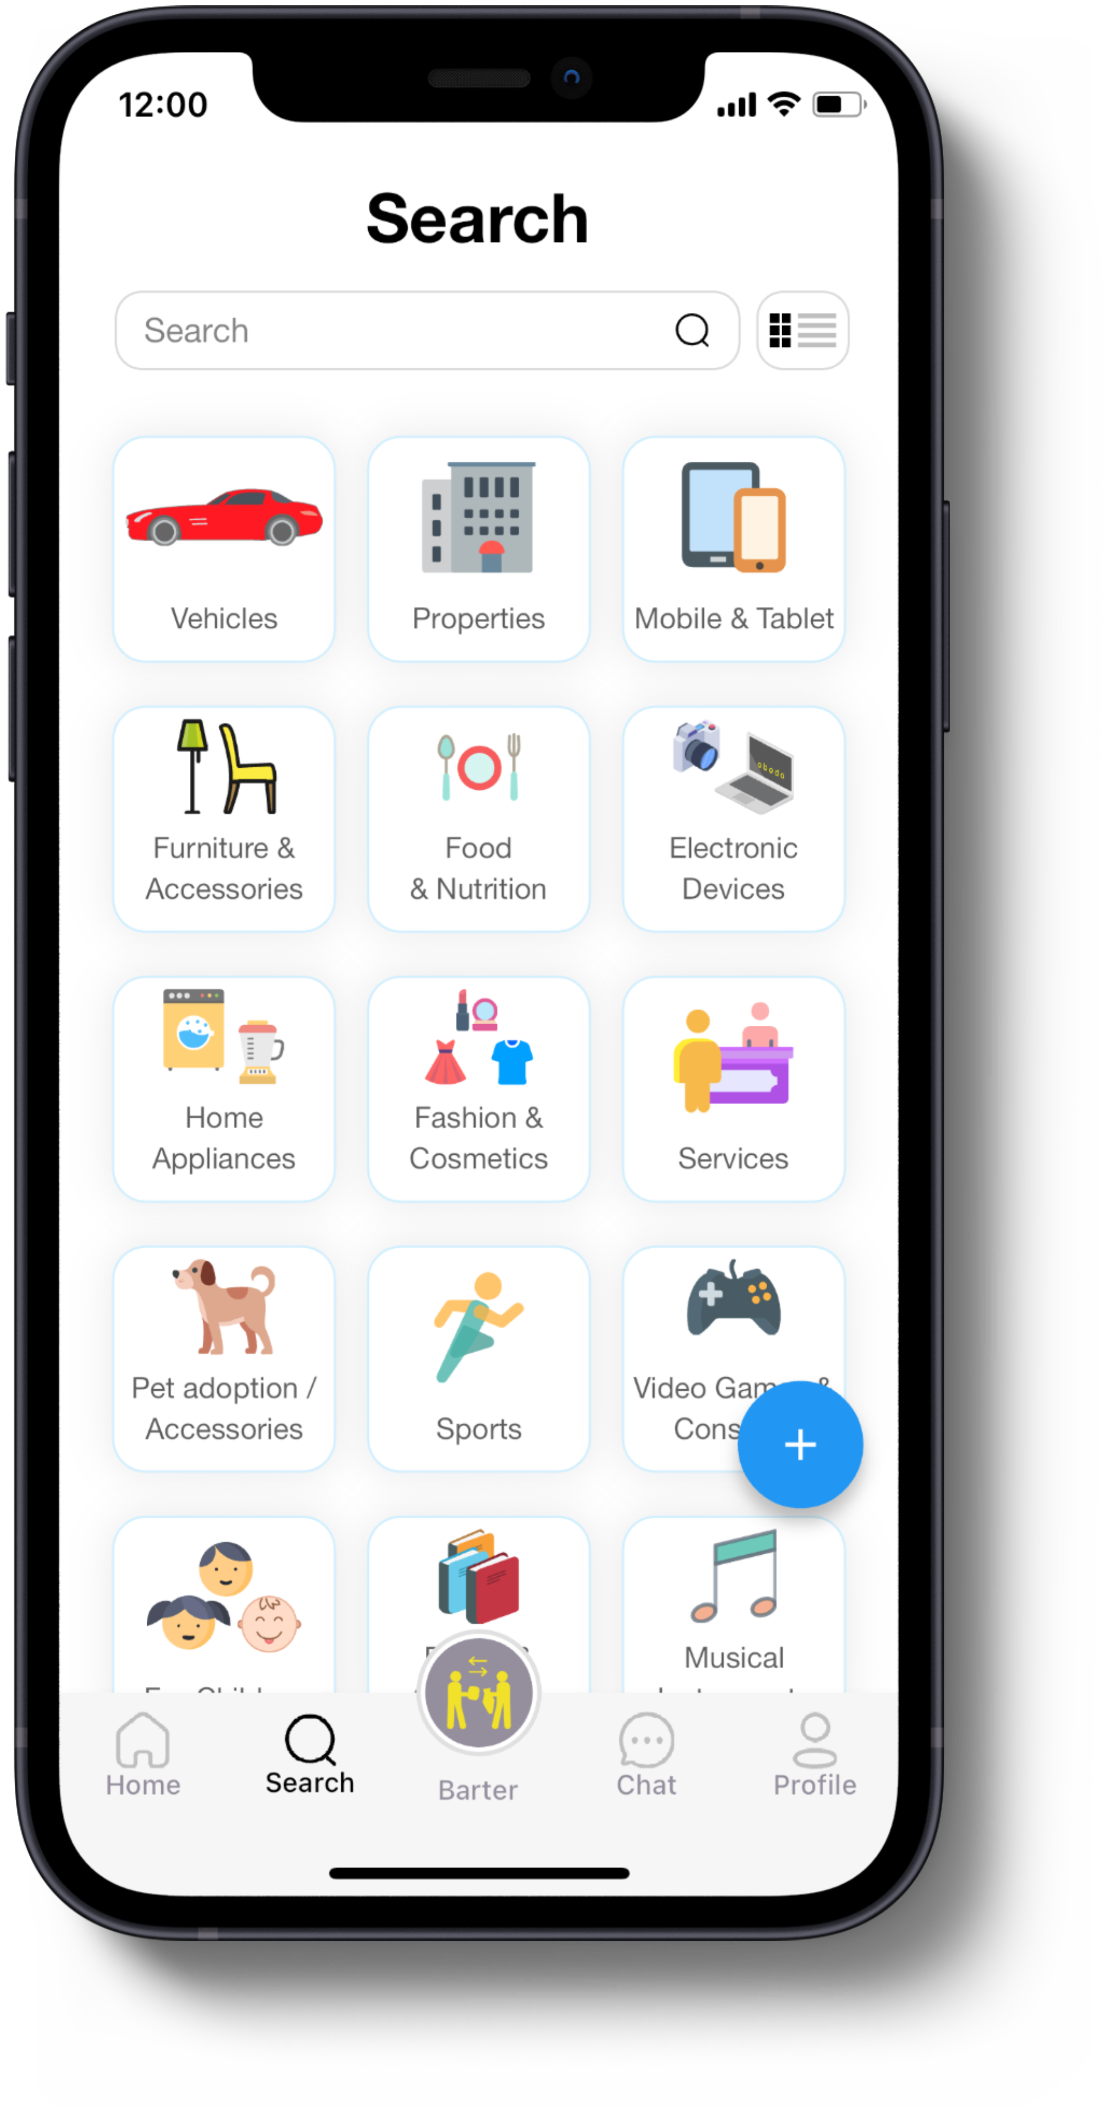 Obodo App's Search Screen graphic